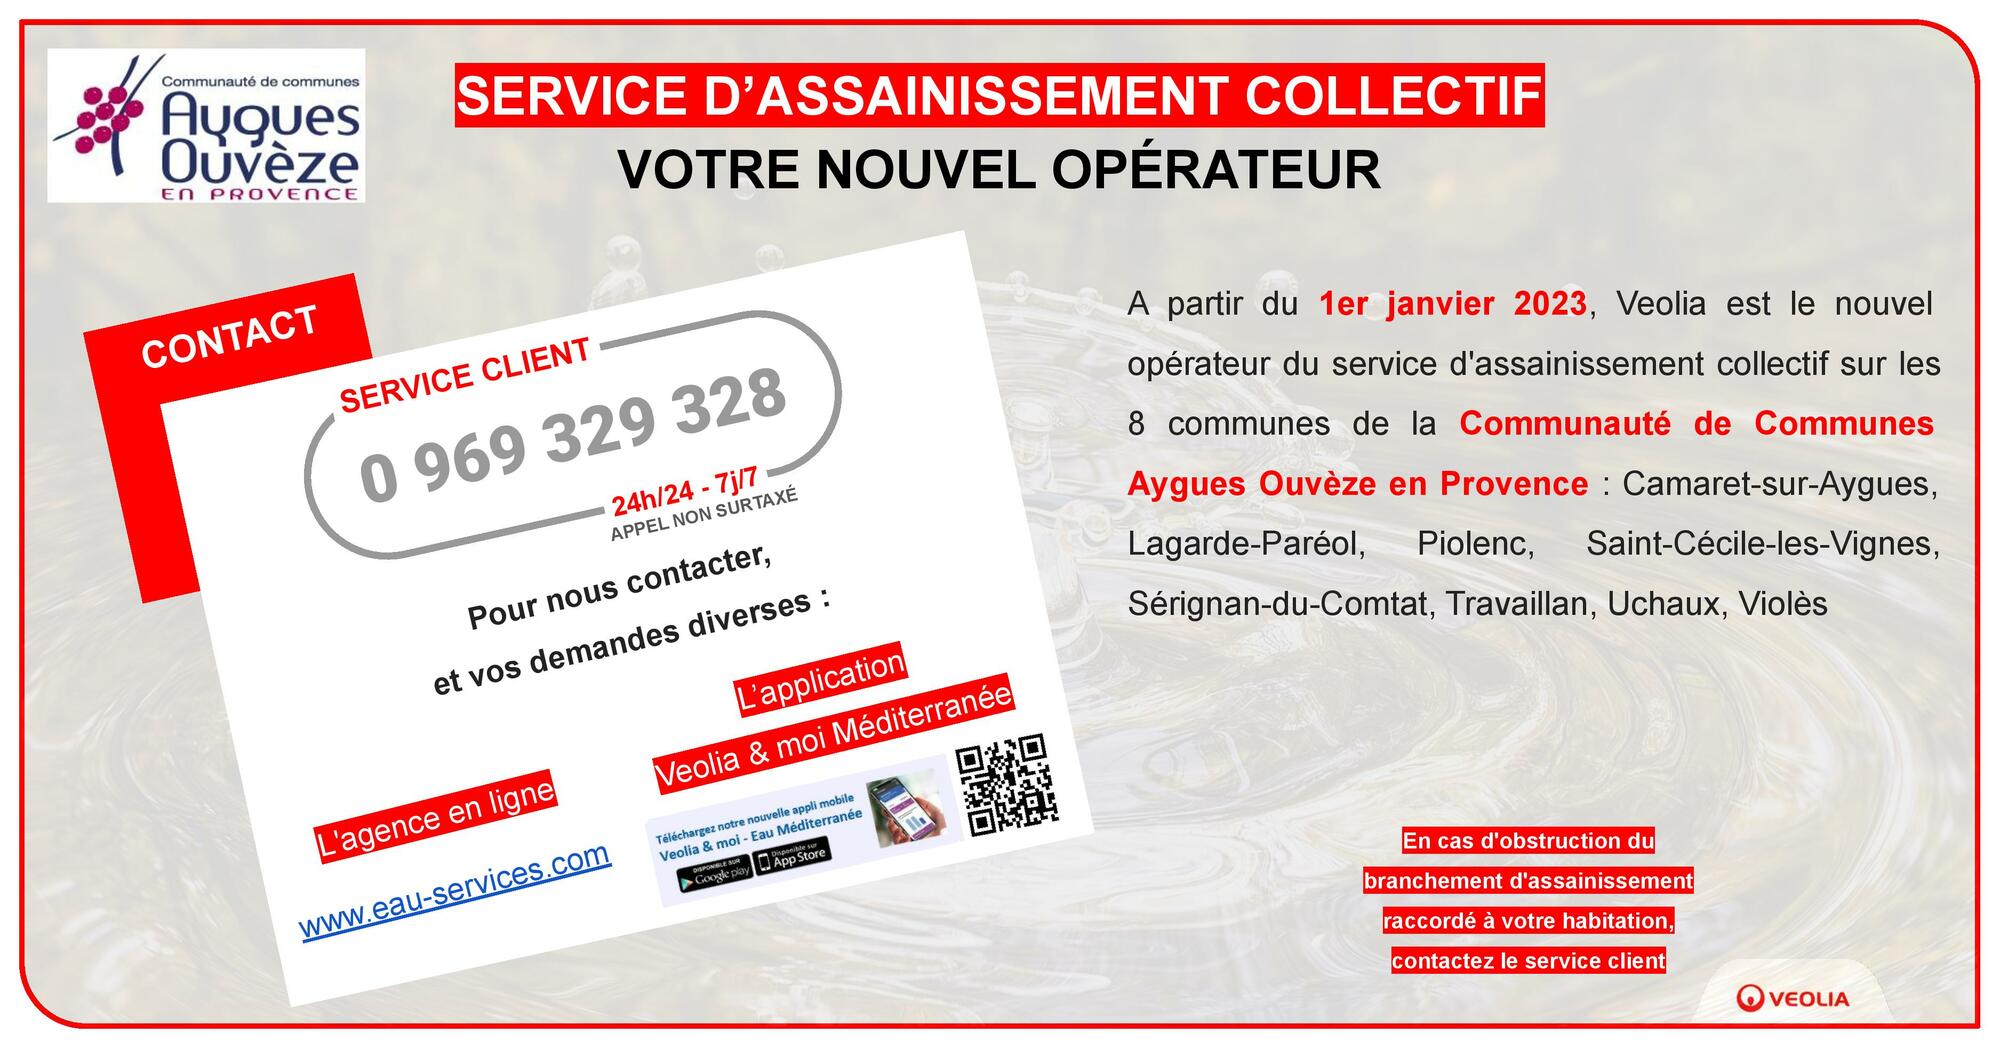 Changement de l'opérateur du service d'assainissement collectif : information de la Communauté de communes Aygues Ouvèze en Provence